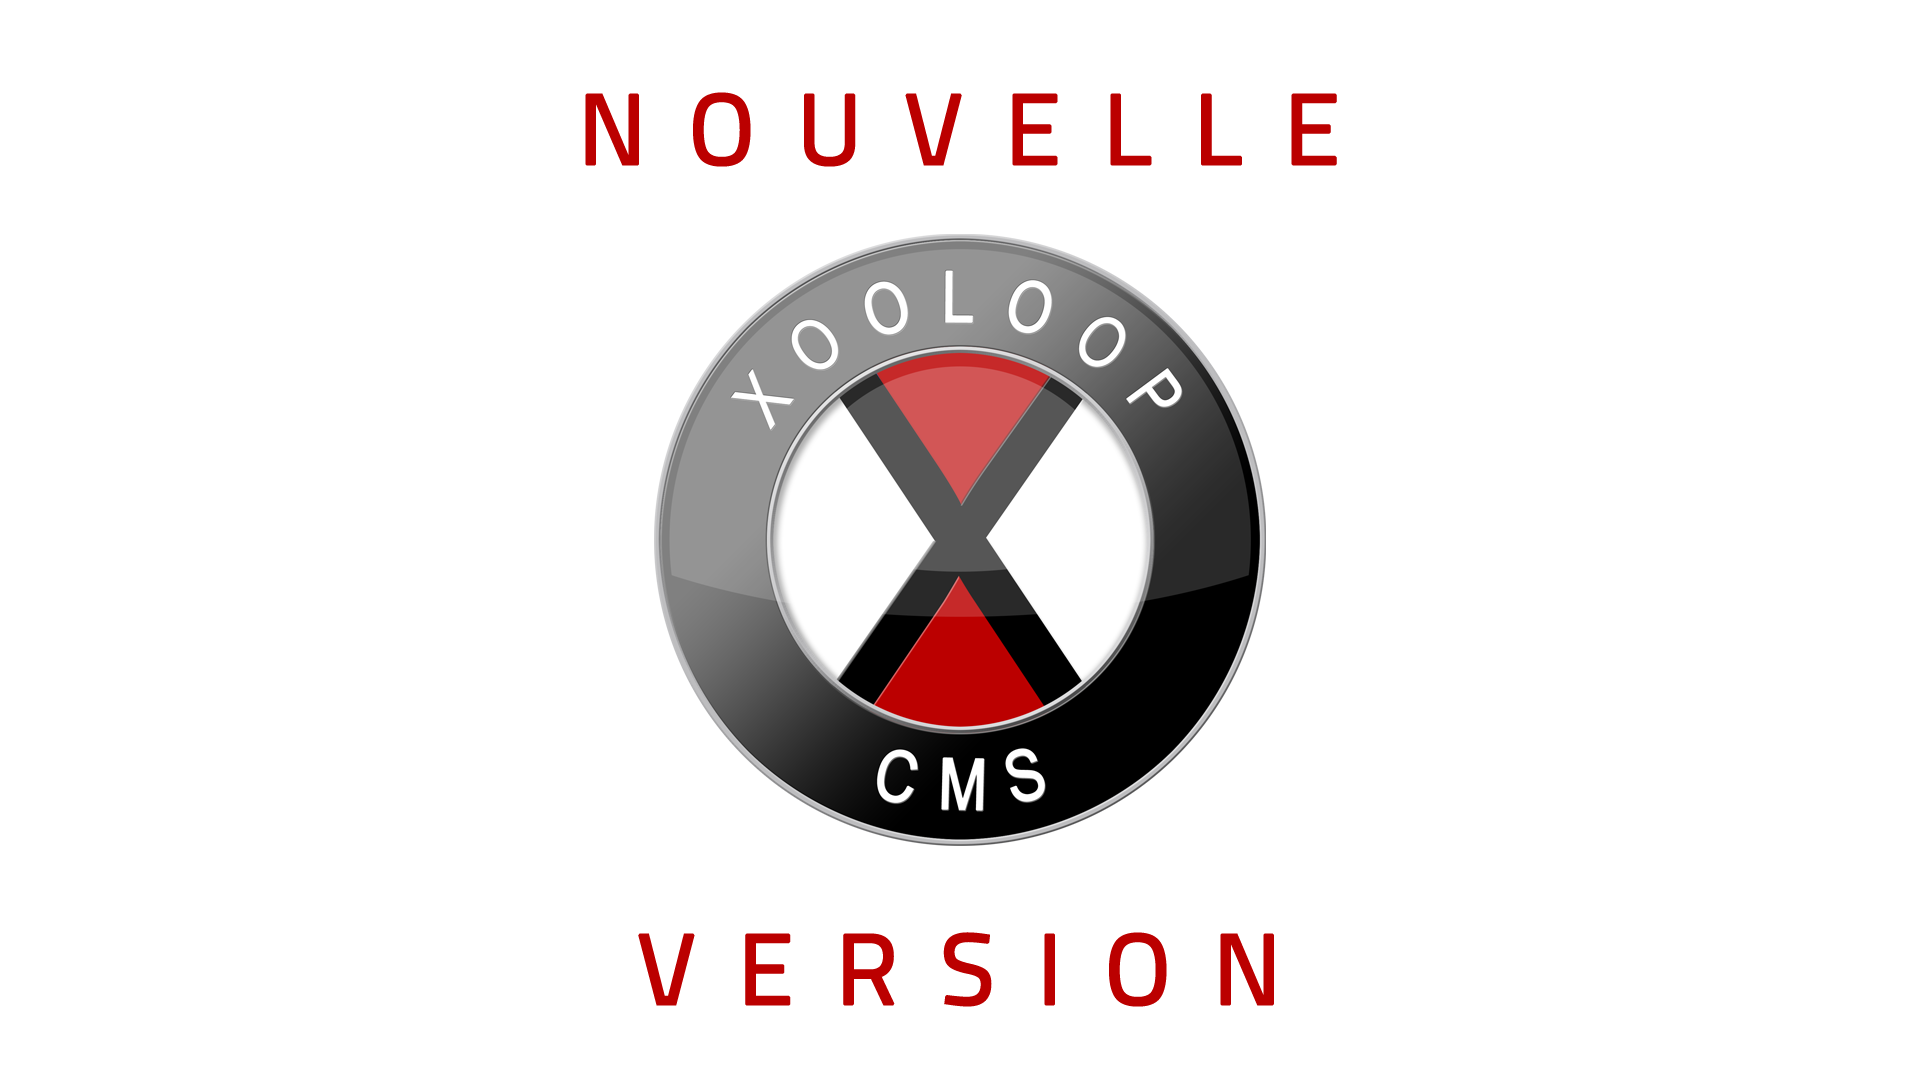 Nouvelle version de Xooloop CMS (v3.7.1)